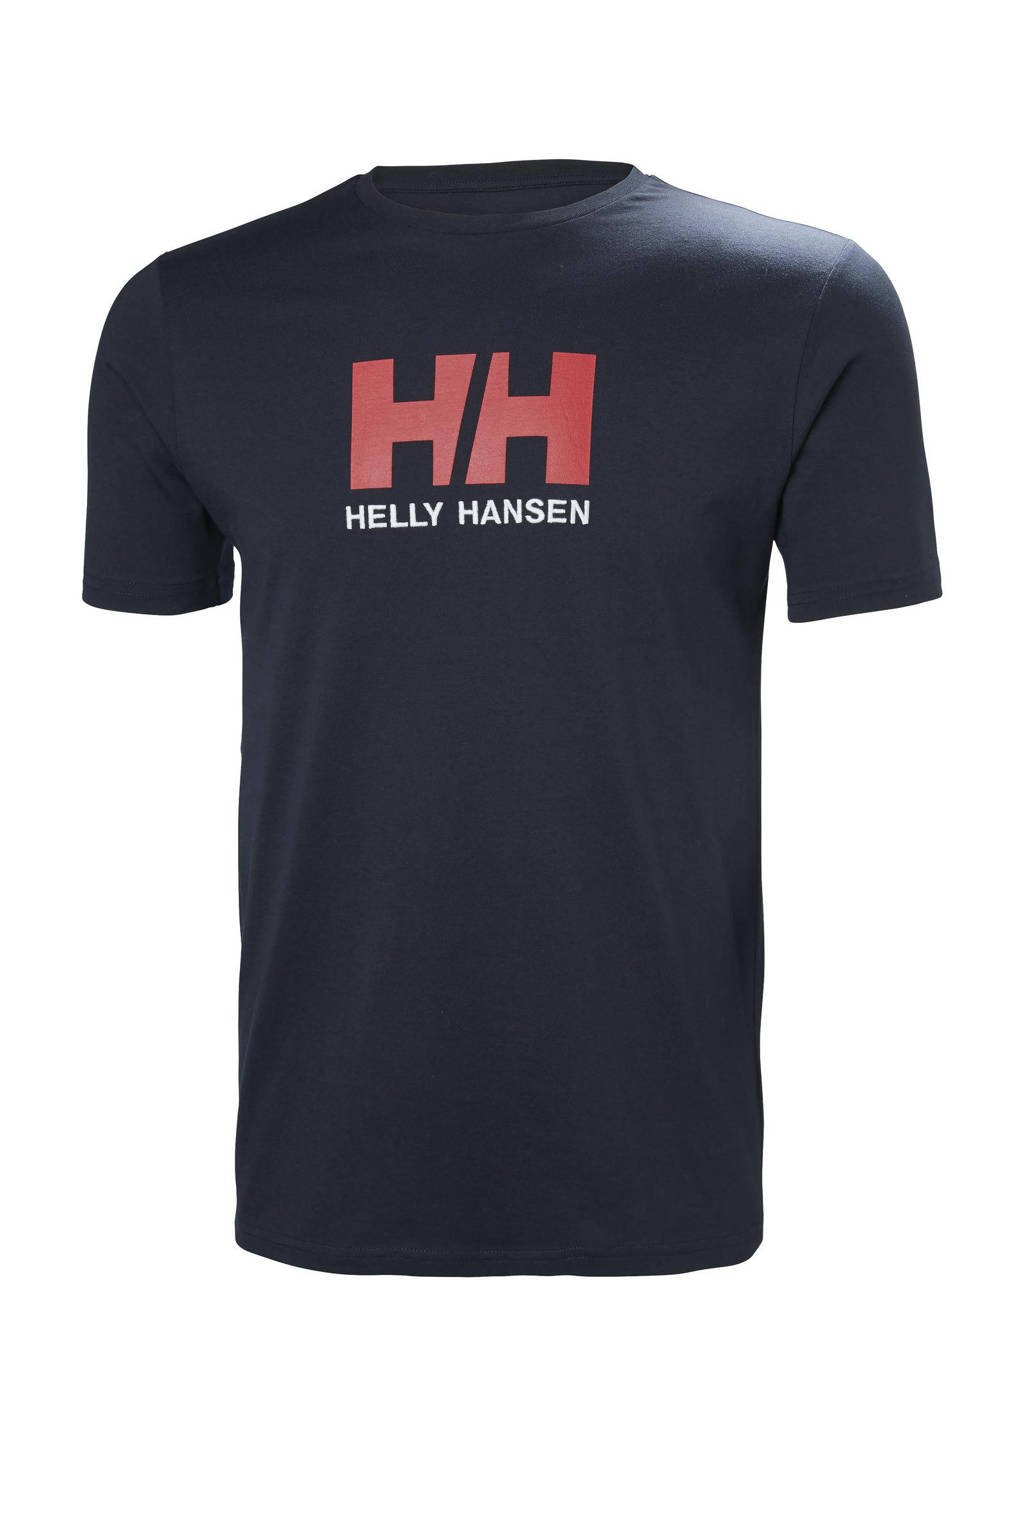 Specialiseren verdediging Gooey Helly Hansen T-shirt met logo donkerblauw | wehkamp